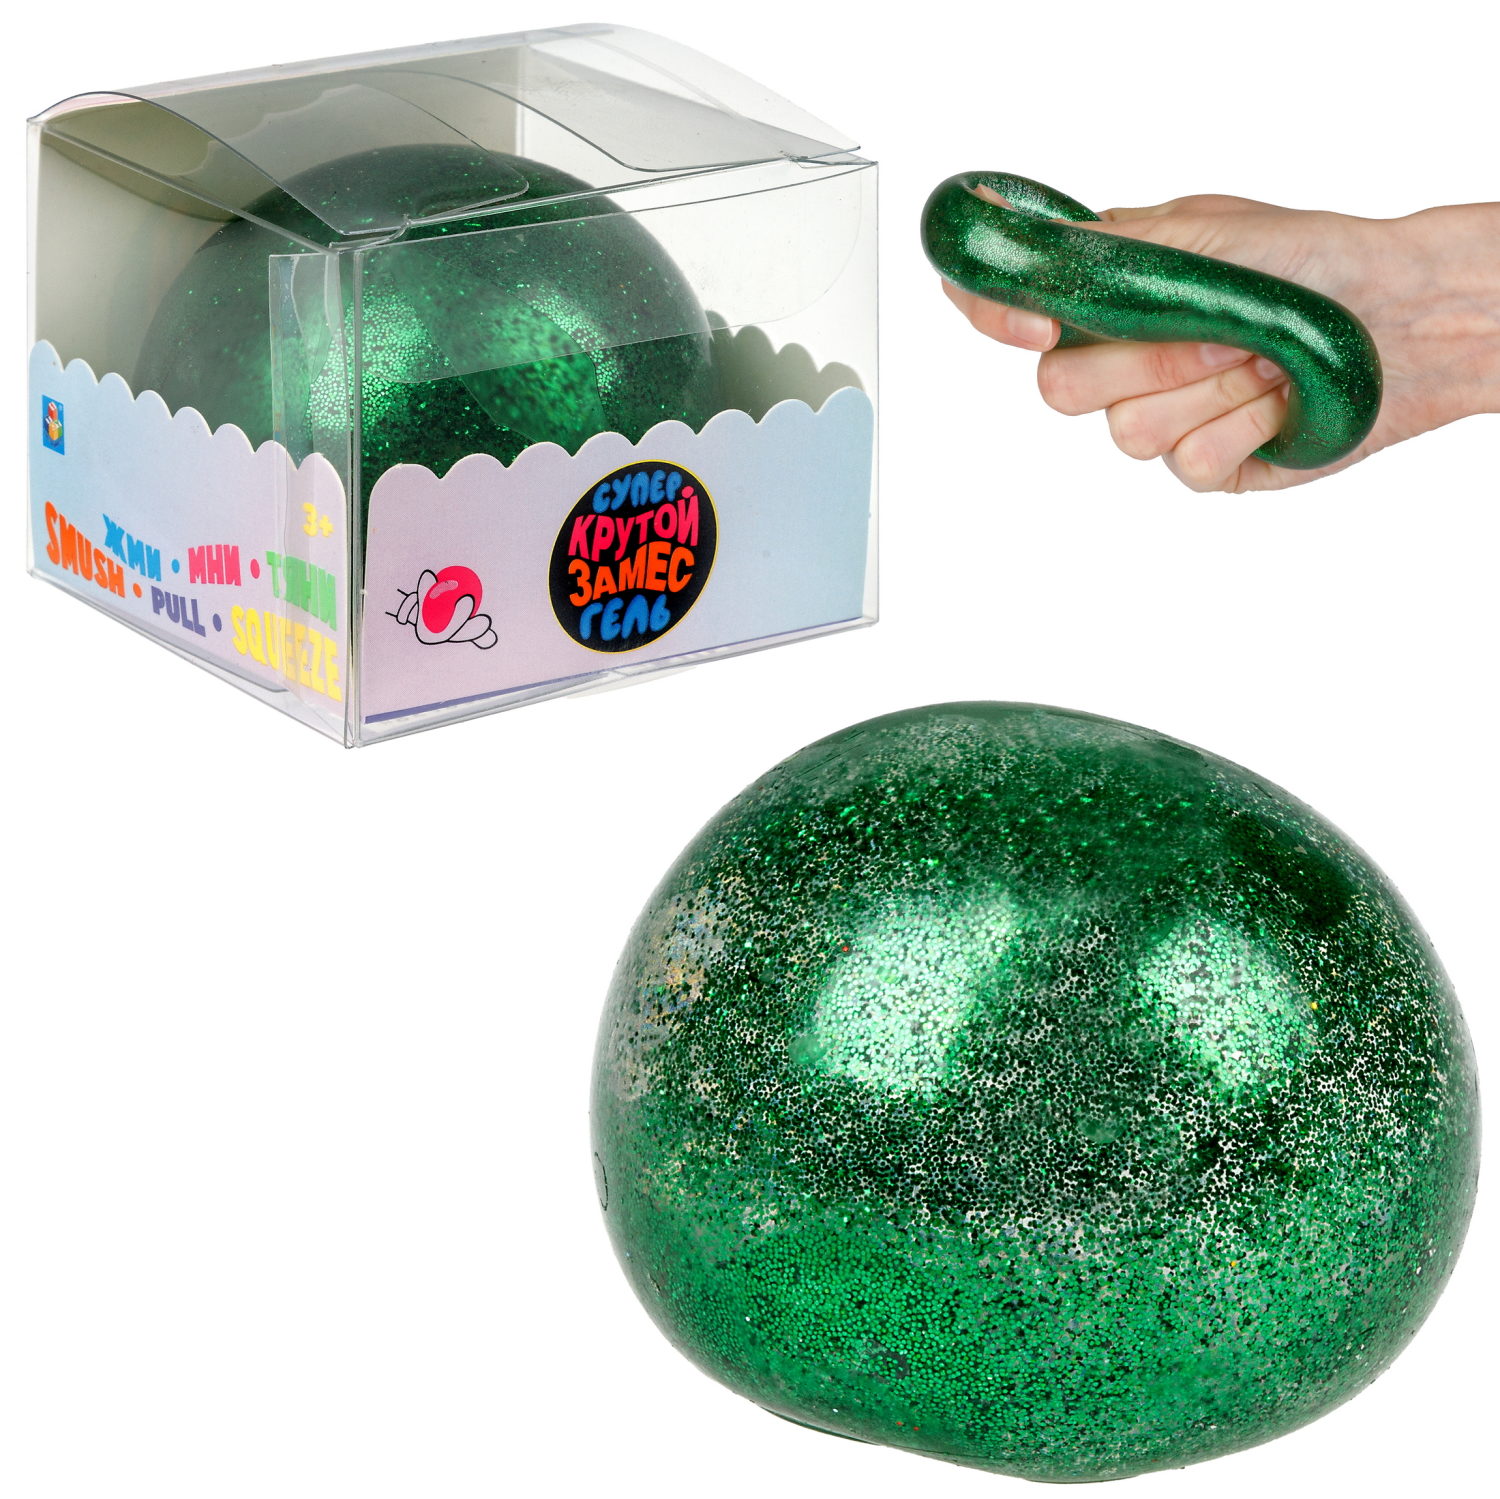 Игрушка-антистресс 1toy Крутой замес Супергель зелёный шар блестки 6см игрушка антистресс 1toy ё ёжик зеленый 8х10 cм т23431 2